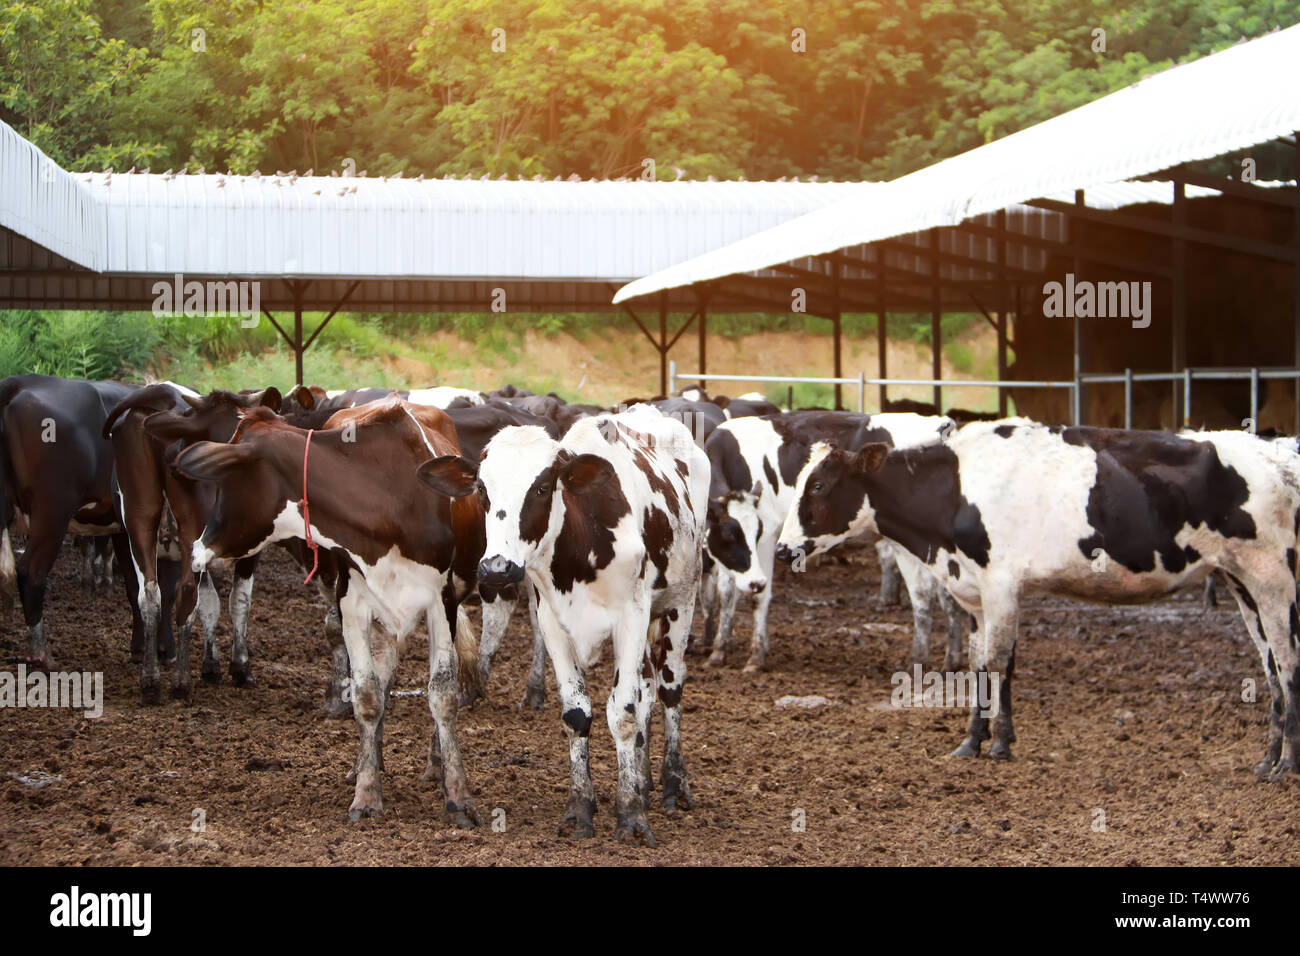 La agricultura industrial, la agricultura y la ganadería rebaño de vacas en la granja Foto de stock